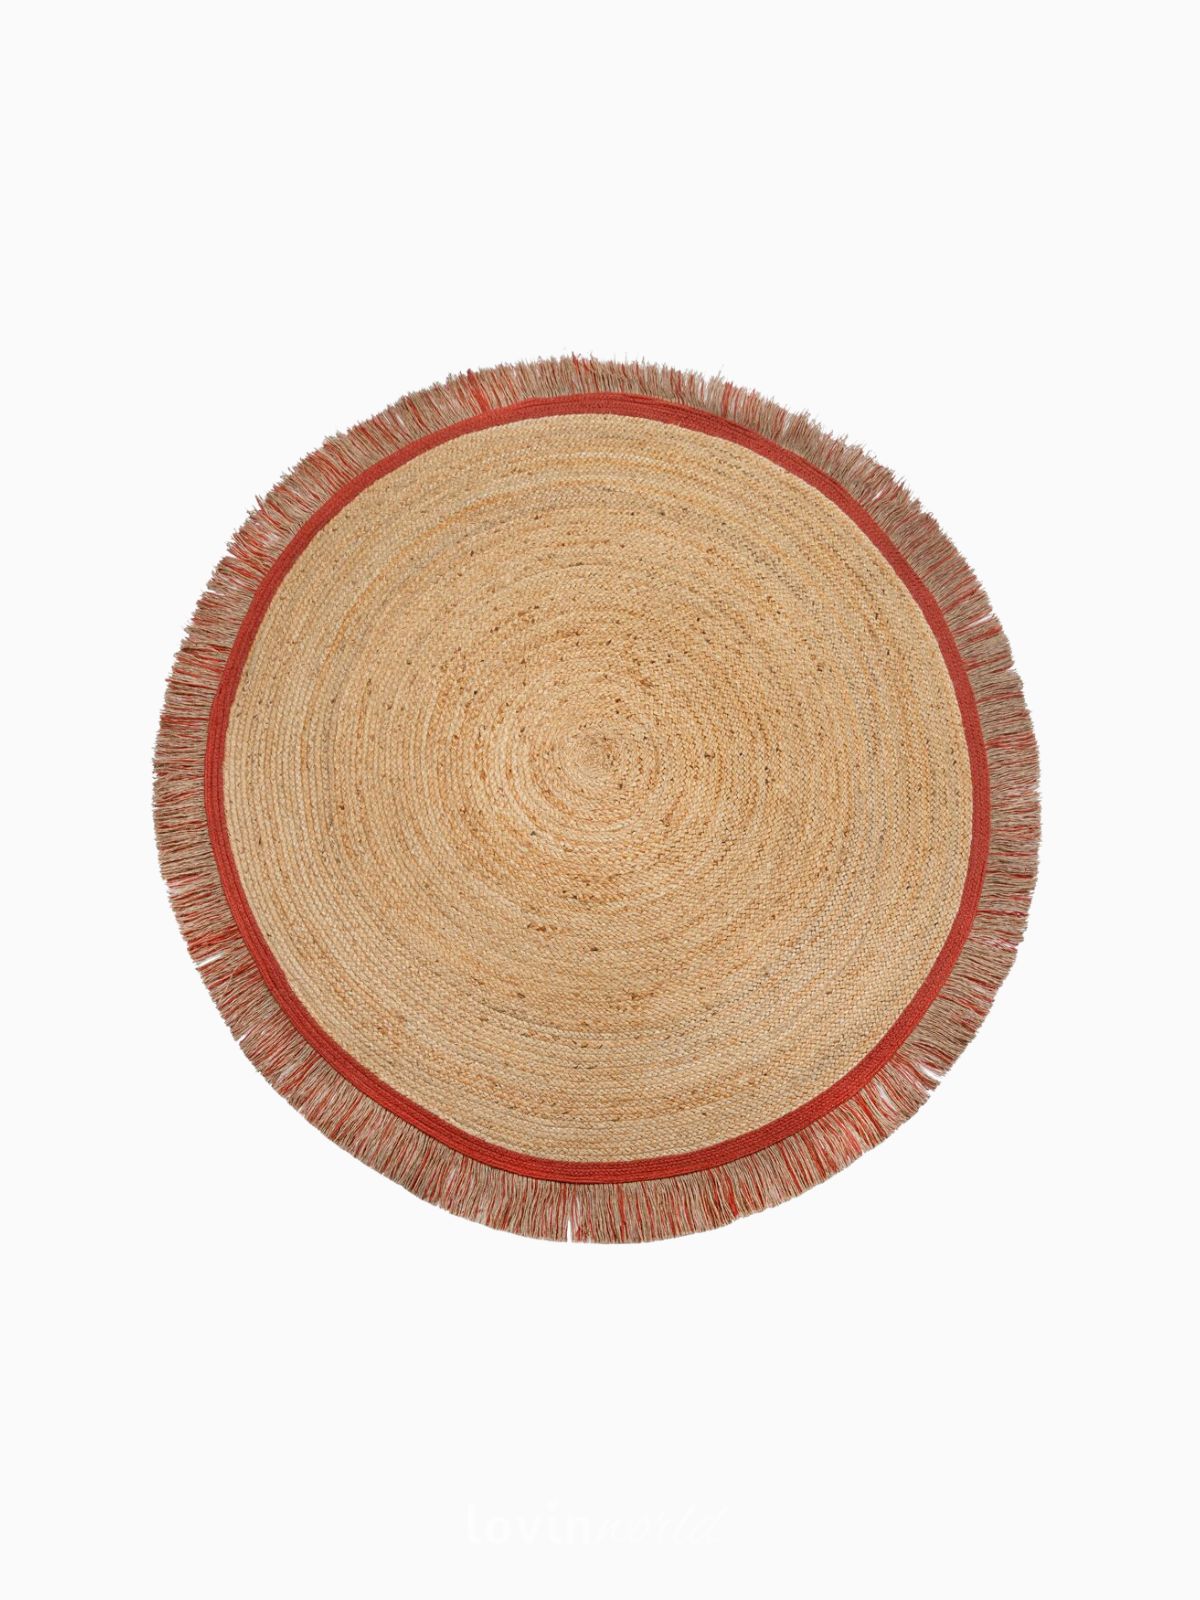 Tappeto rotondo Kahana in iuta, in colore rosso e naturale 180x180 cm.-1